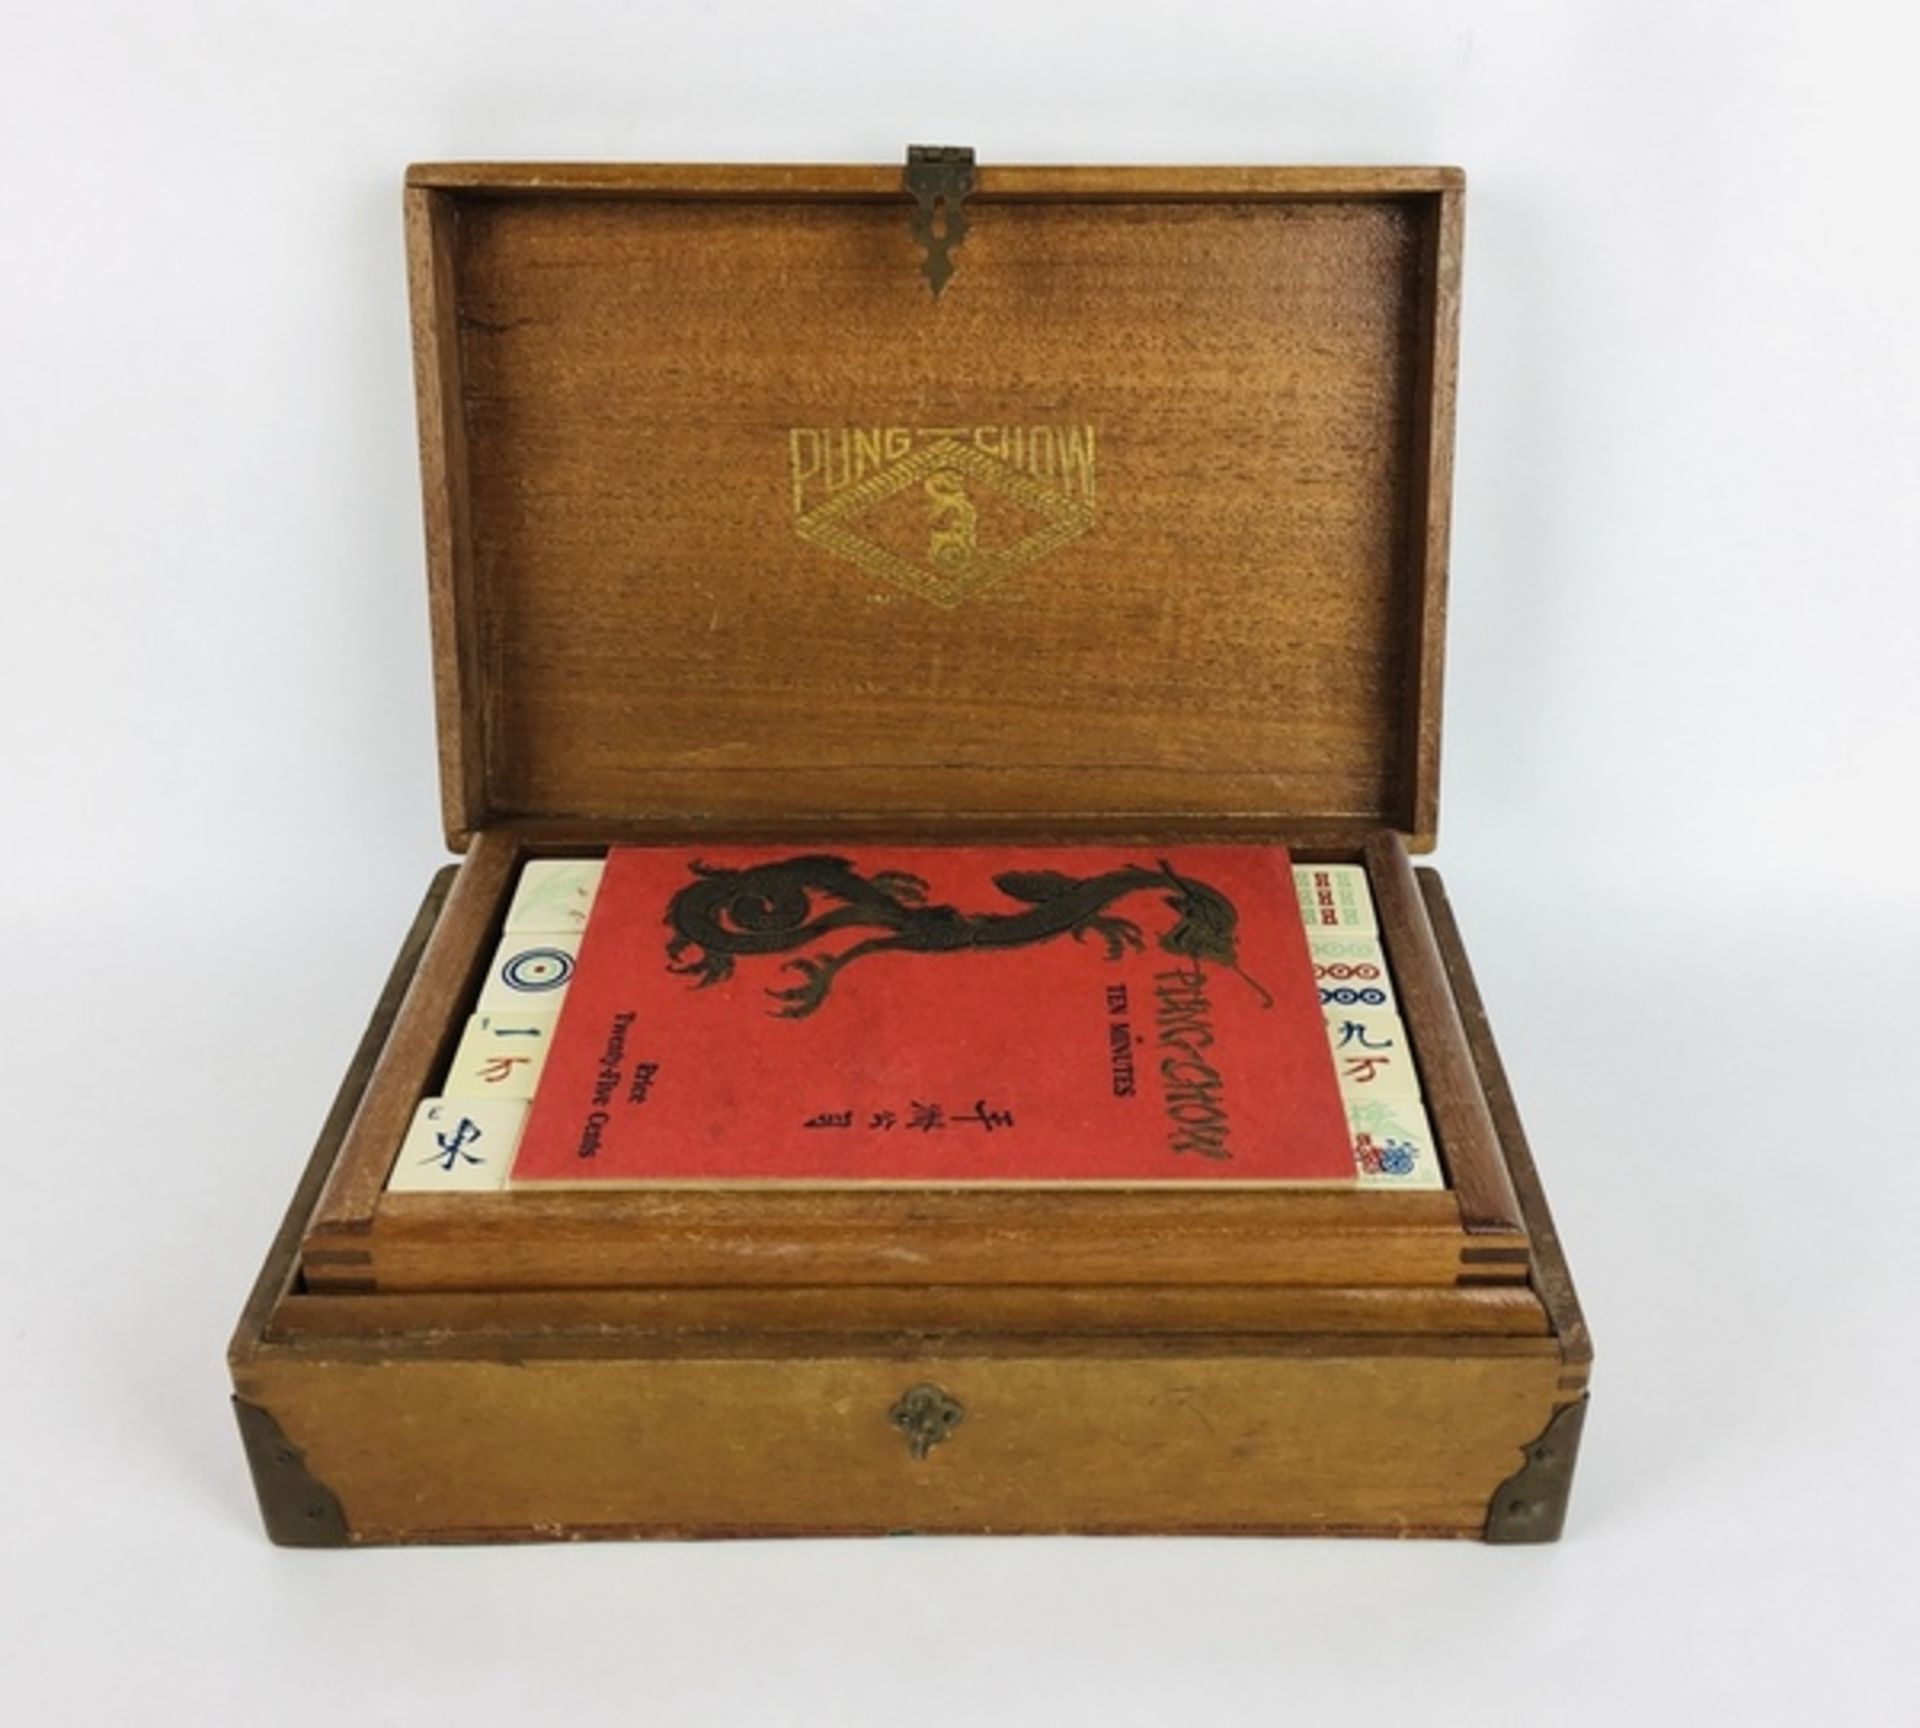 (Mahjong) Mahjong, Pung Chow, 1923De doos is Amerikaans, van hout met bovenop Chinese karakters - Bild 2 aus 14